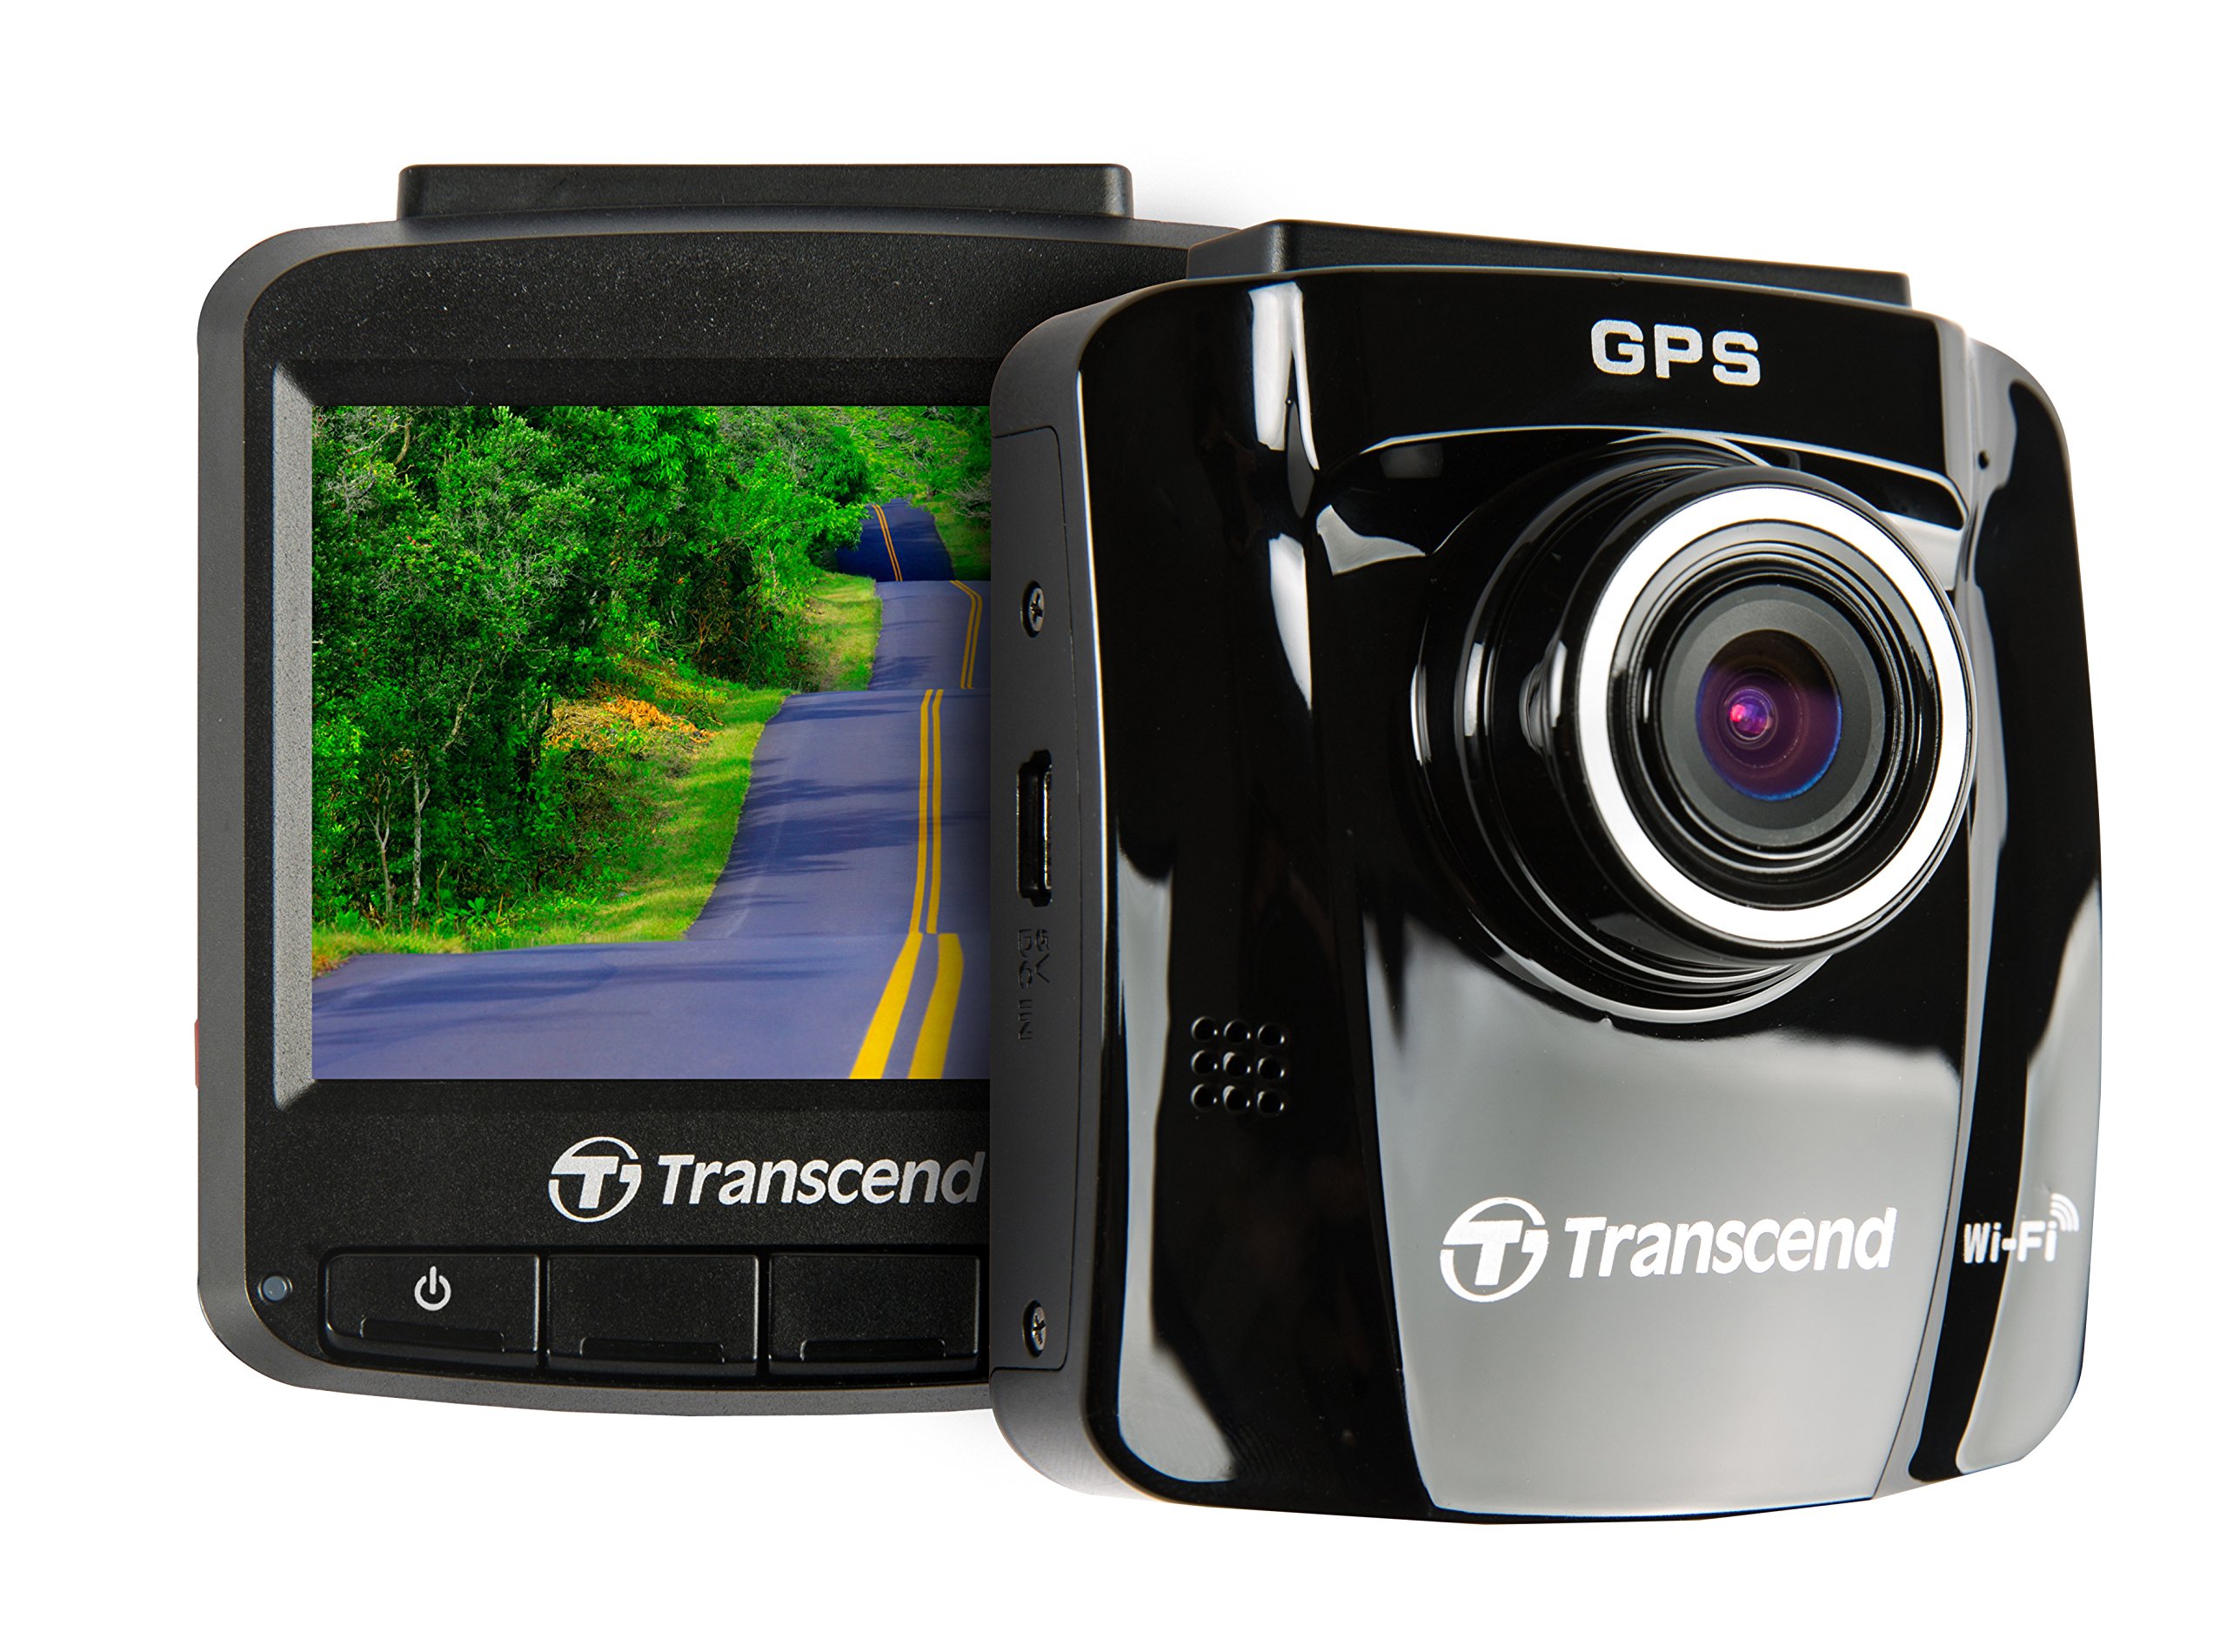 Transcend GPS/WiFi 対応ドライブレコーダー 2.4インチ液晶 300万画素 Full HD 画質 DrivePro 220 / TS16GDP220M-J